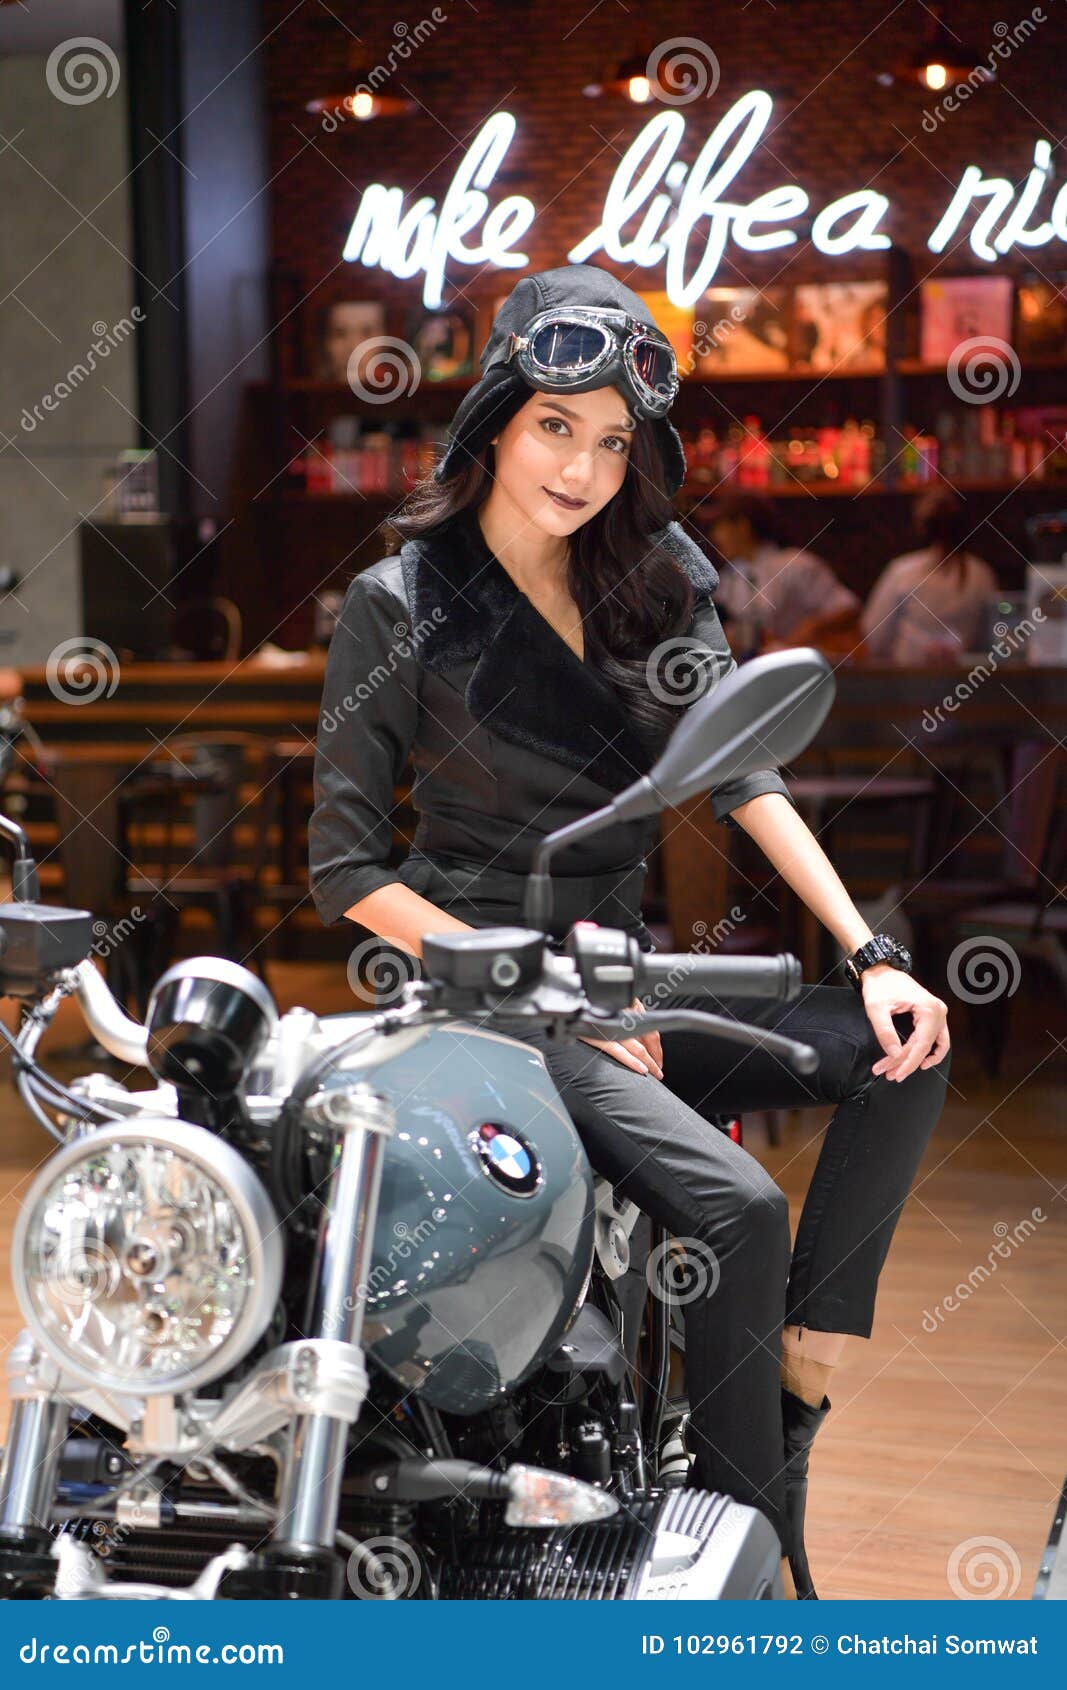 BMW Motorcycle in Bangkok International Thailand Motor Show 2017